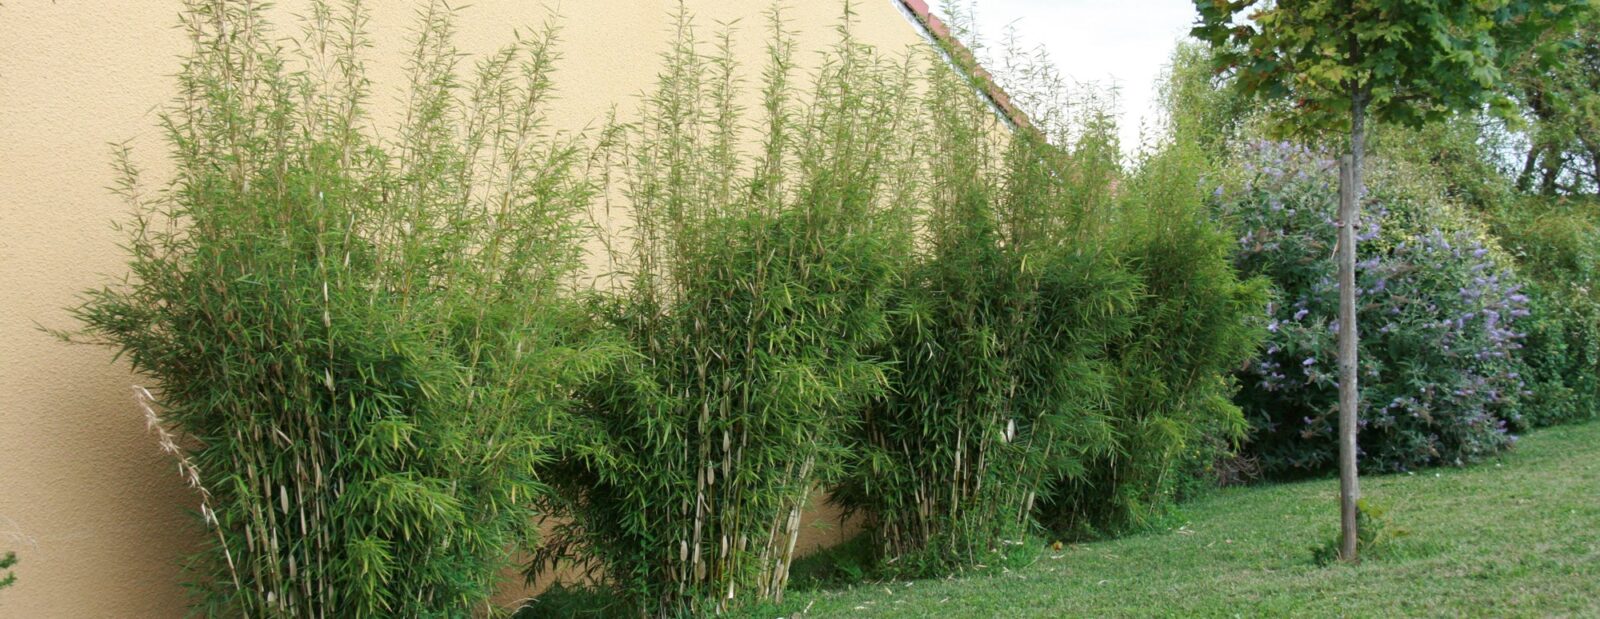 Planter une haie de bambous